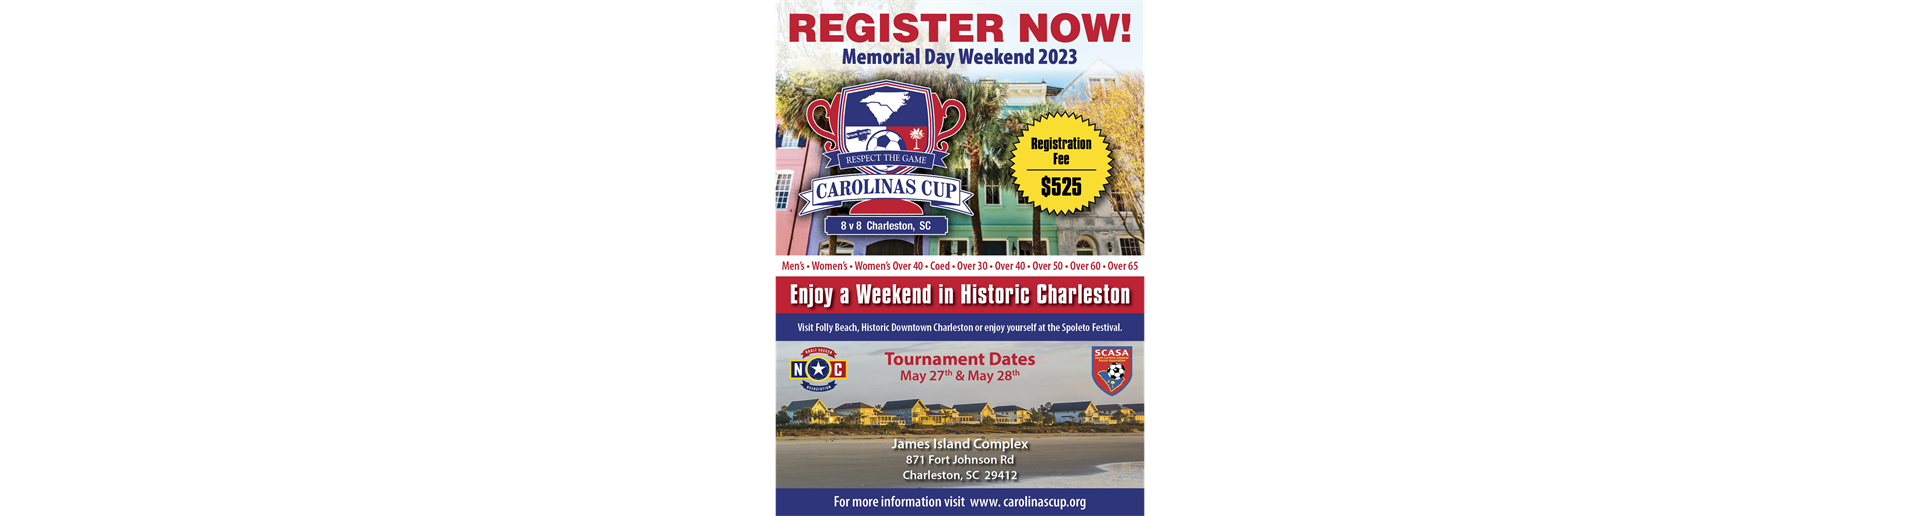 Carolinas Cup Charleston * May 27 - 28